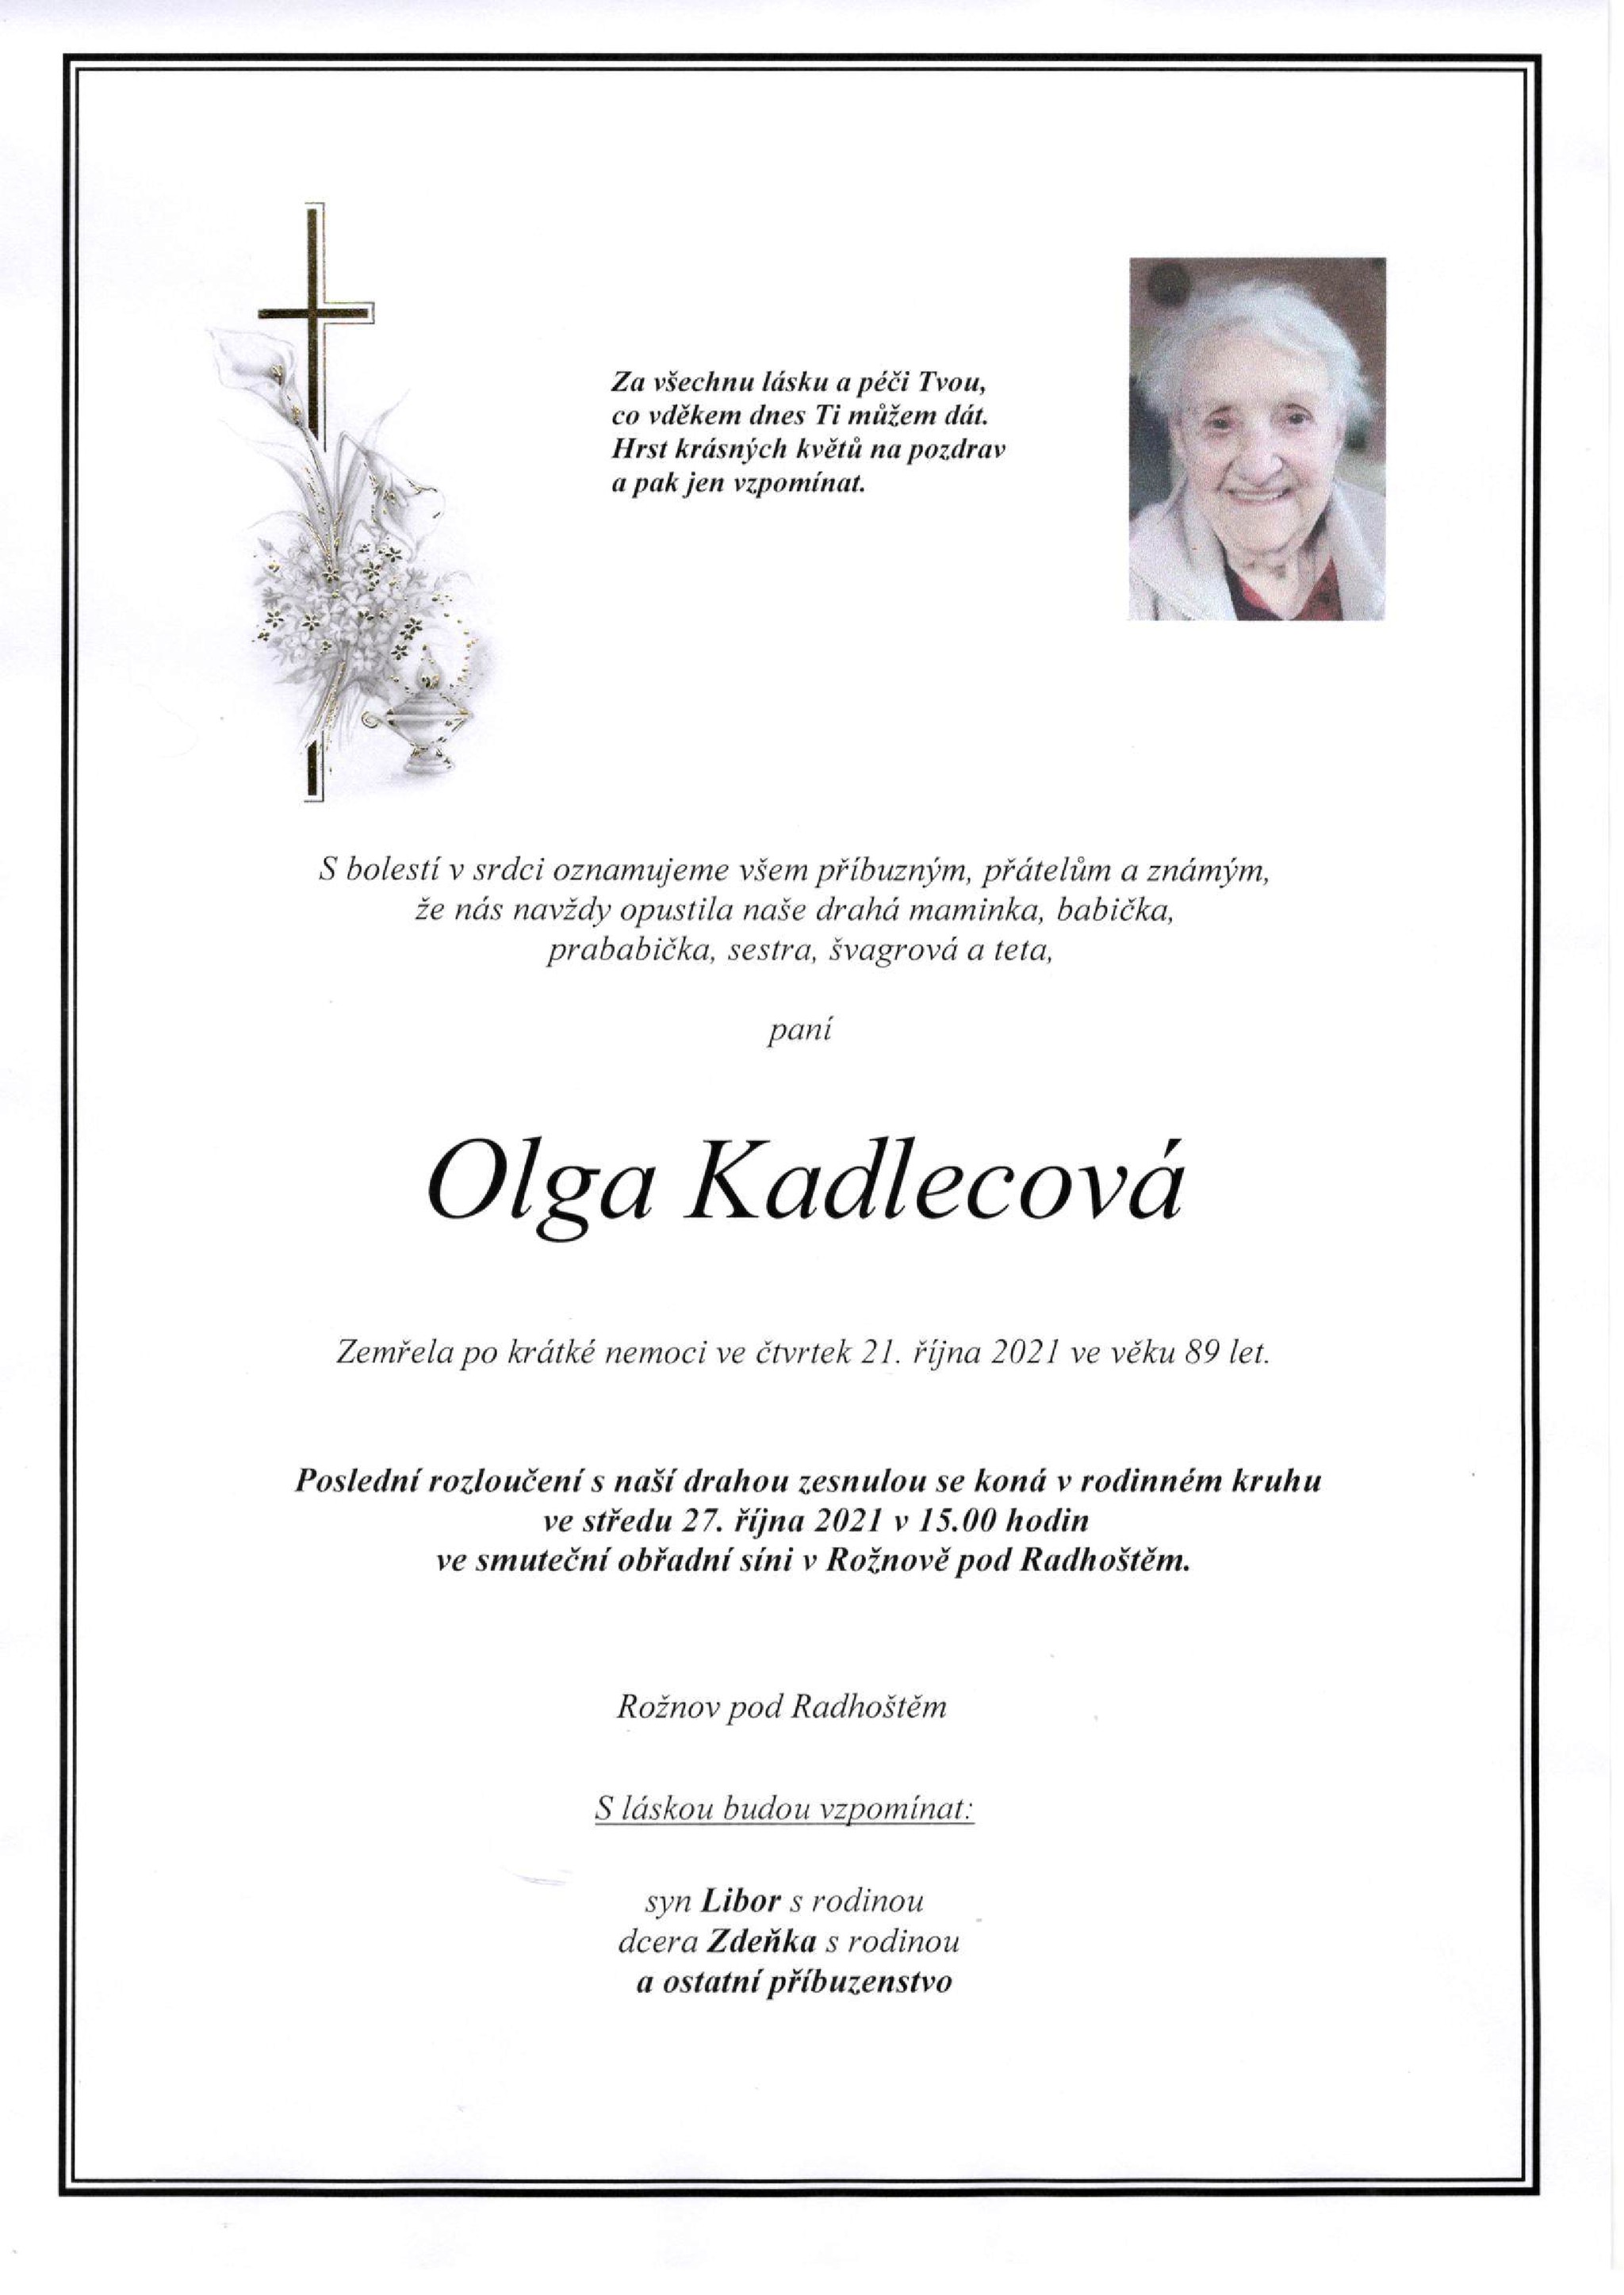 Olga Kadlecová